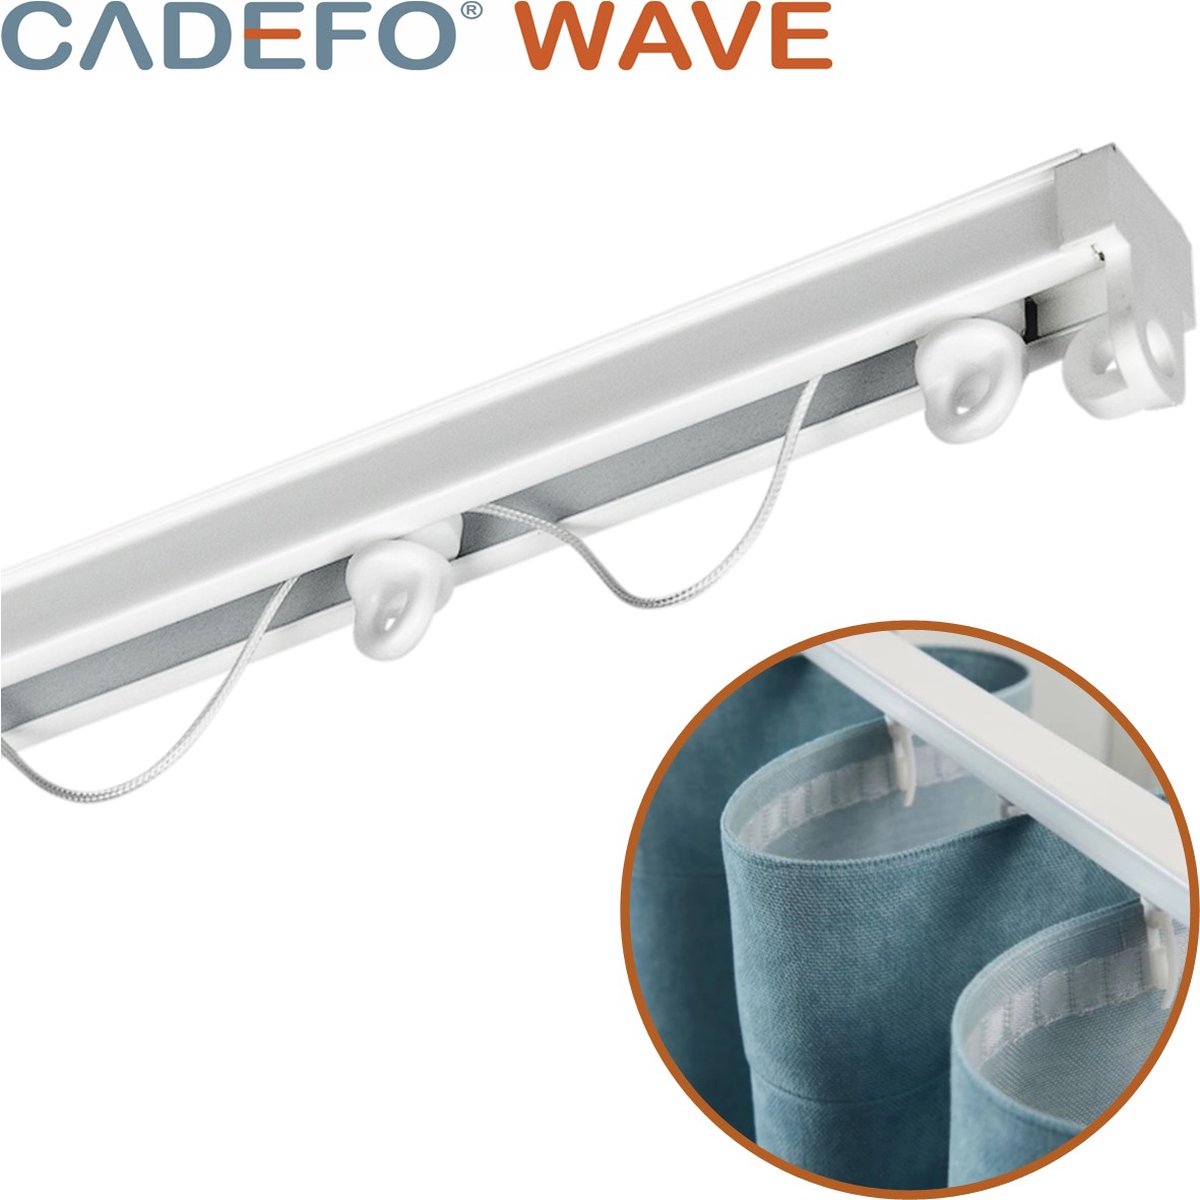 CADEFO WAVE (401 - 450 cm) Gordijnrails - Compleet op maat! - UIT 1 STUK - Leverbaar tot 6 meter - Plafondbevestiging - Lengte 411 cm